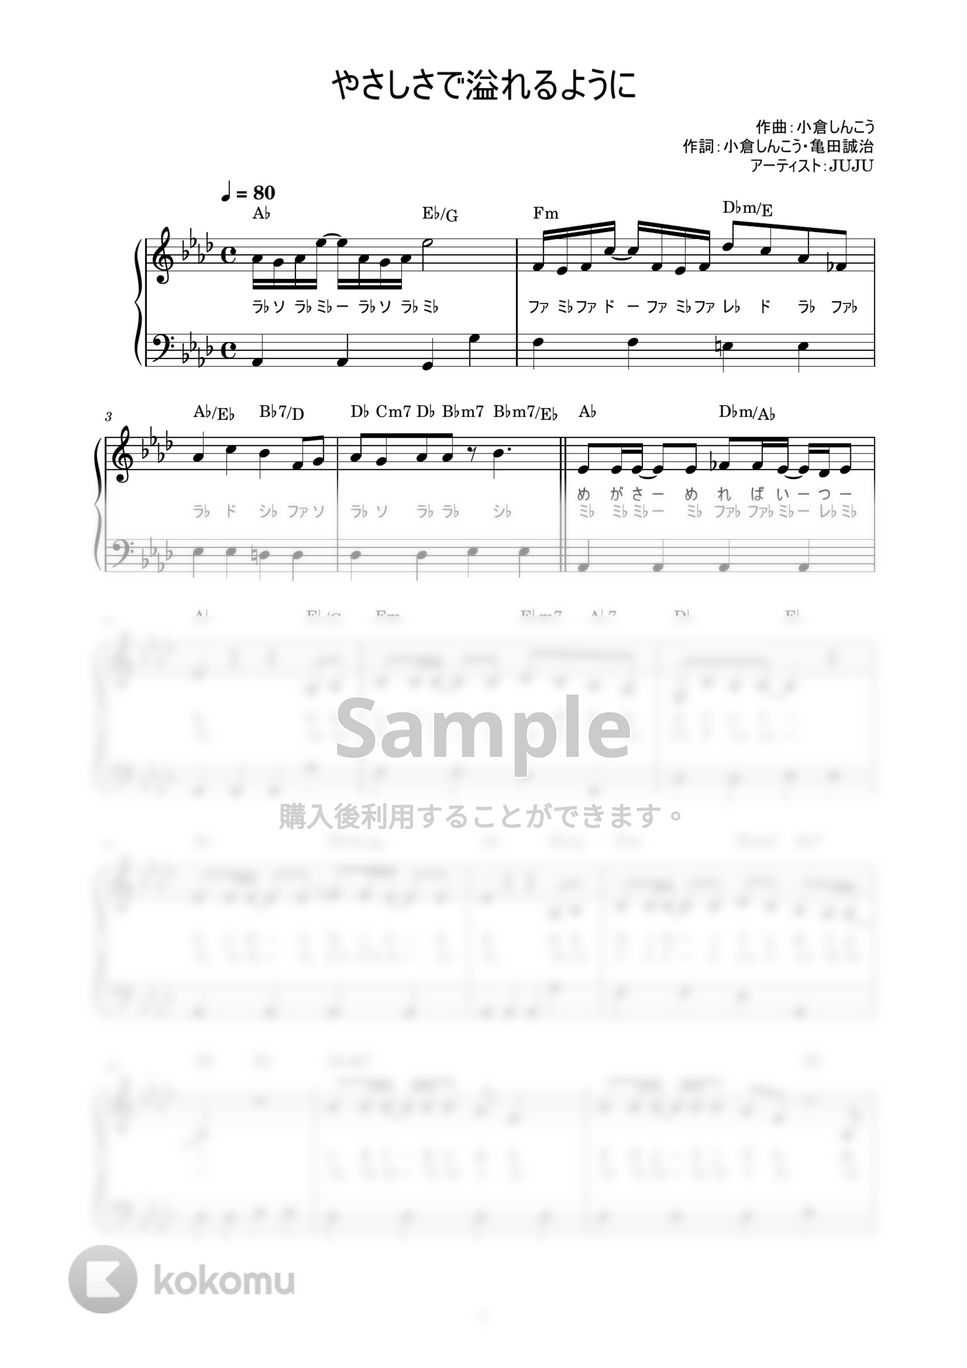 JUJU - やさしさで溢れるように (かんたん / 歌詞付き / ドレミ付き / 初心者) by piano.tokyo